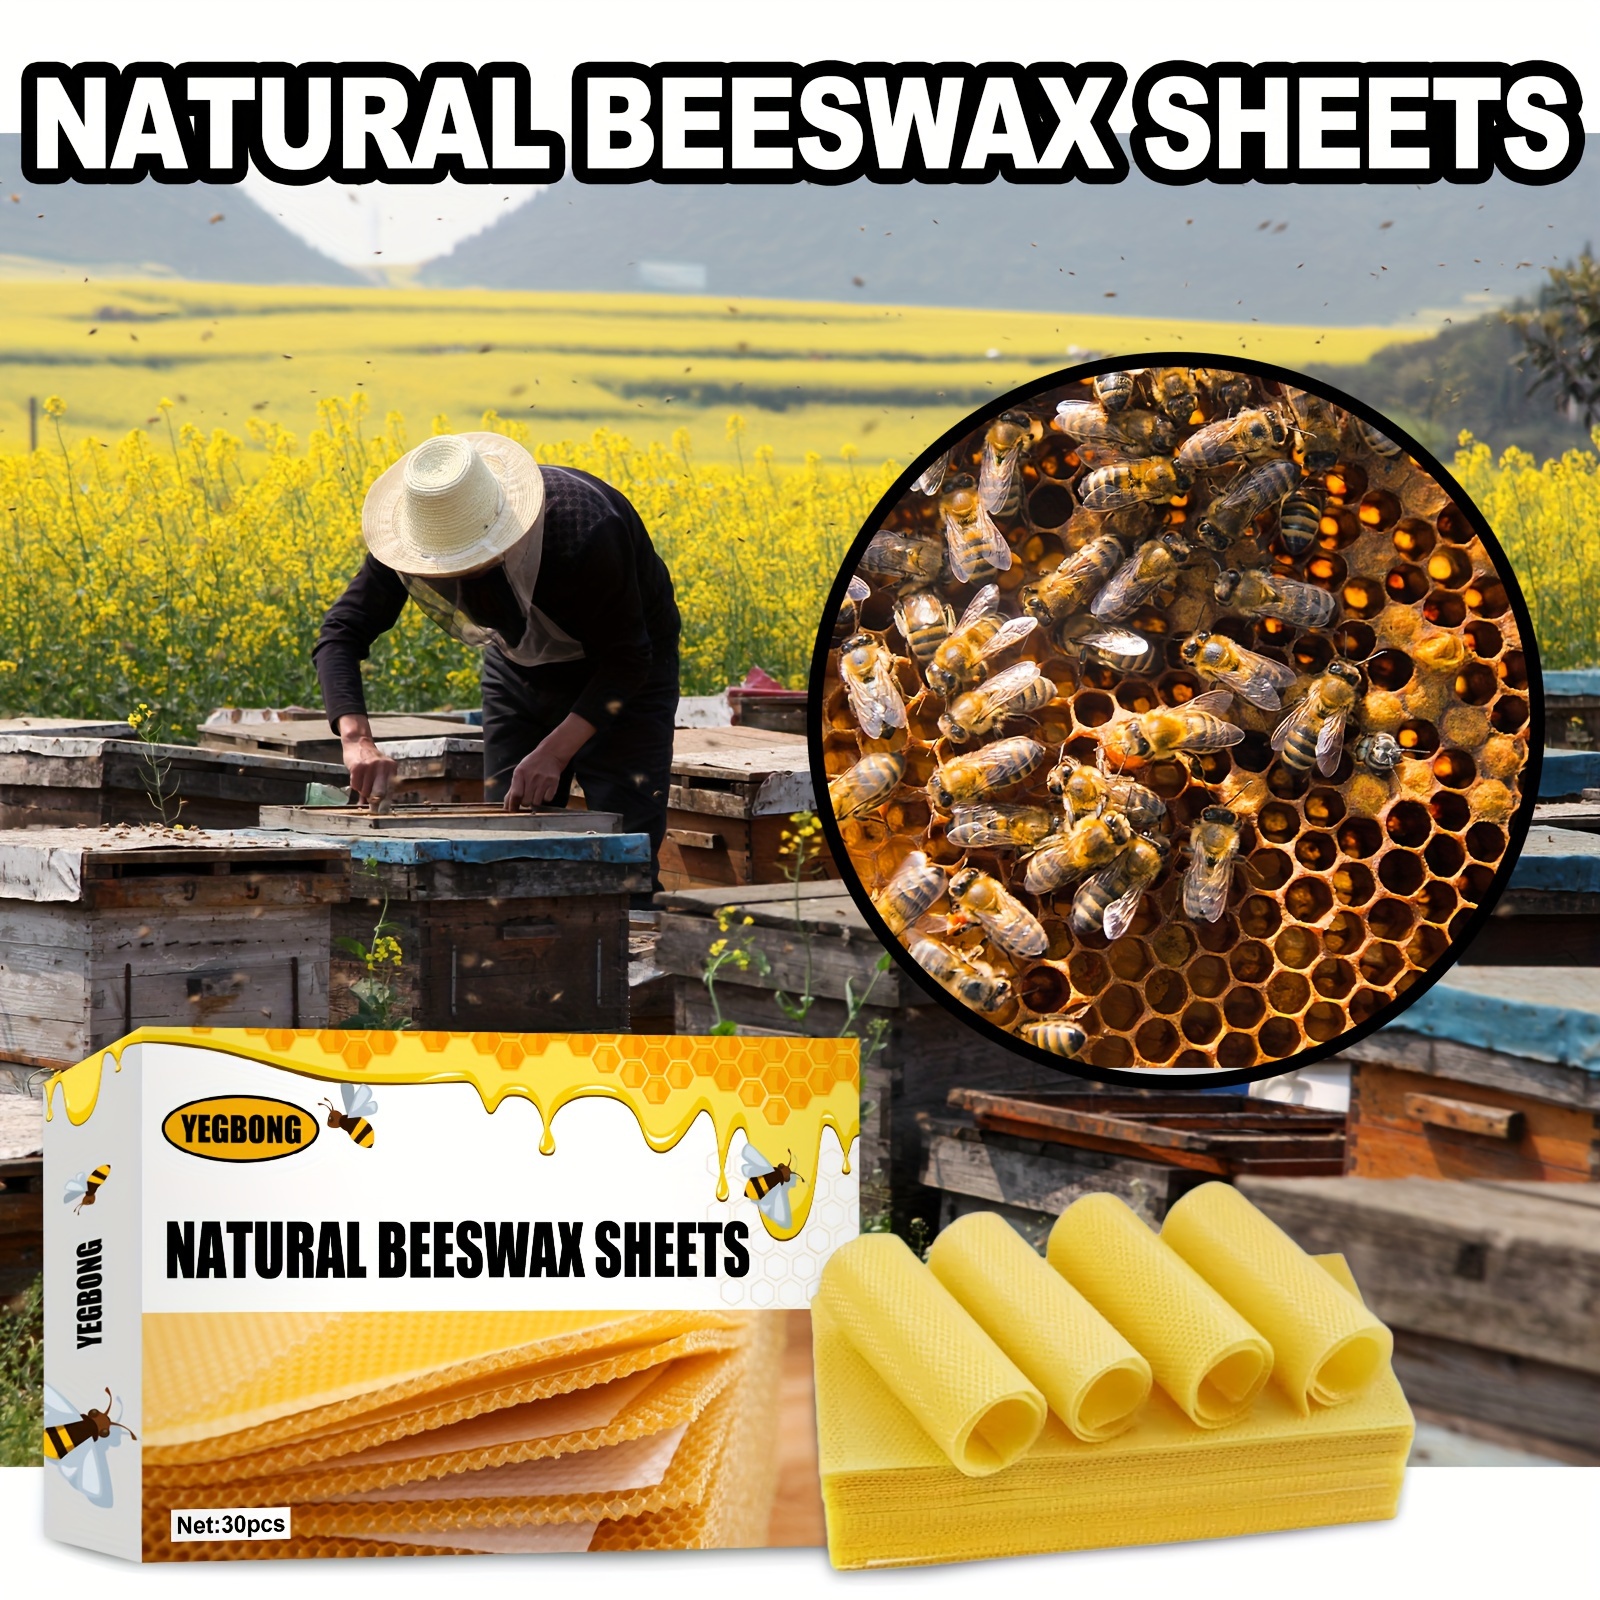 10pcs/set Beeswax Sheet, Beekeeping Foundation Sheets, Beeswax Candle  Making Kit Natural Bee Wax Honeycomb Sheets for Hives - AliExpress